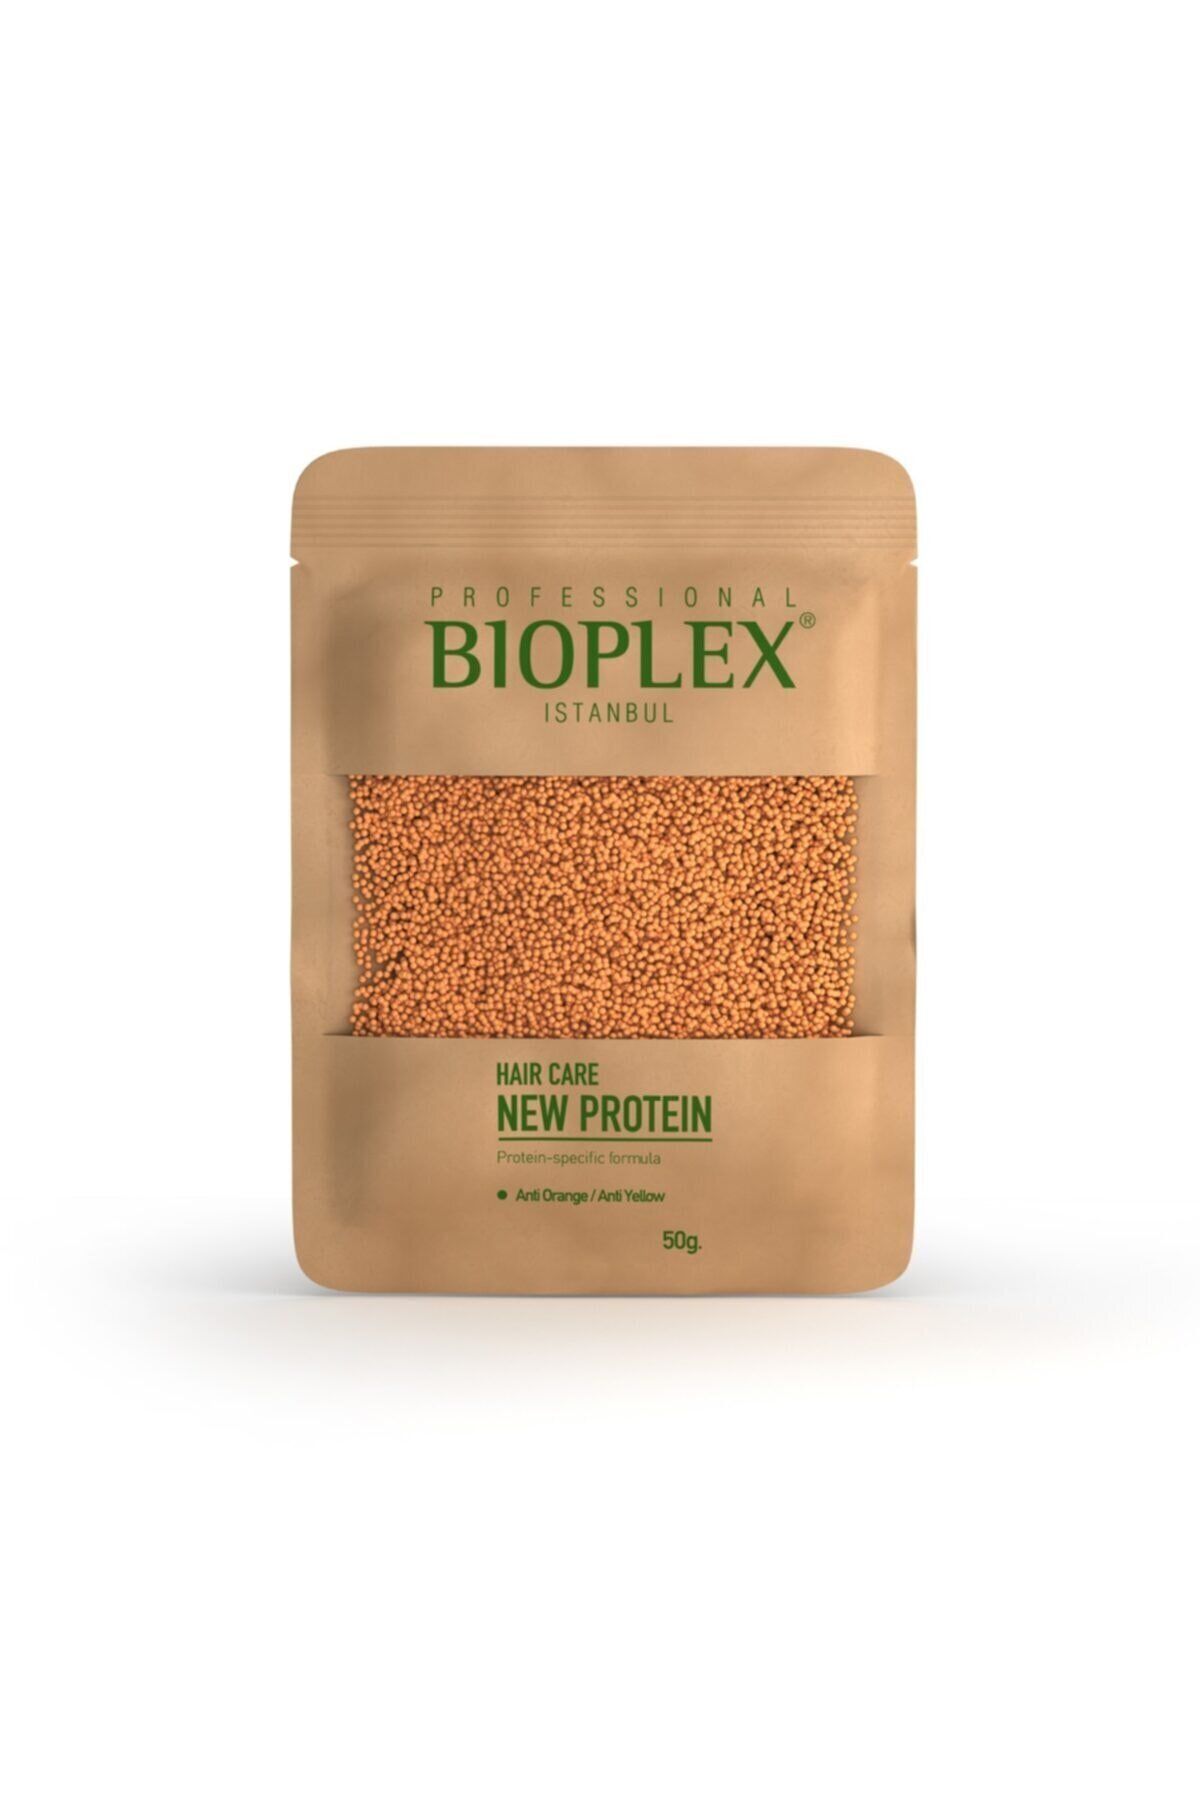 Bioplex Saç Bakım Proteini - New Hair Protein Saç Bakımı İçin Özel Ürün 50 gr